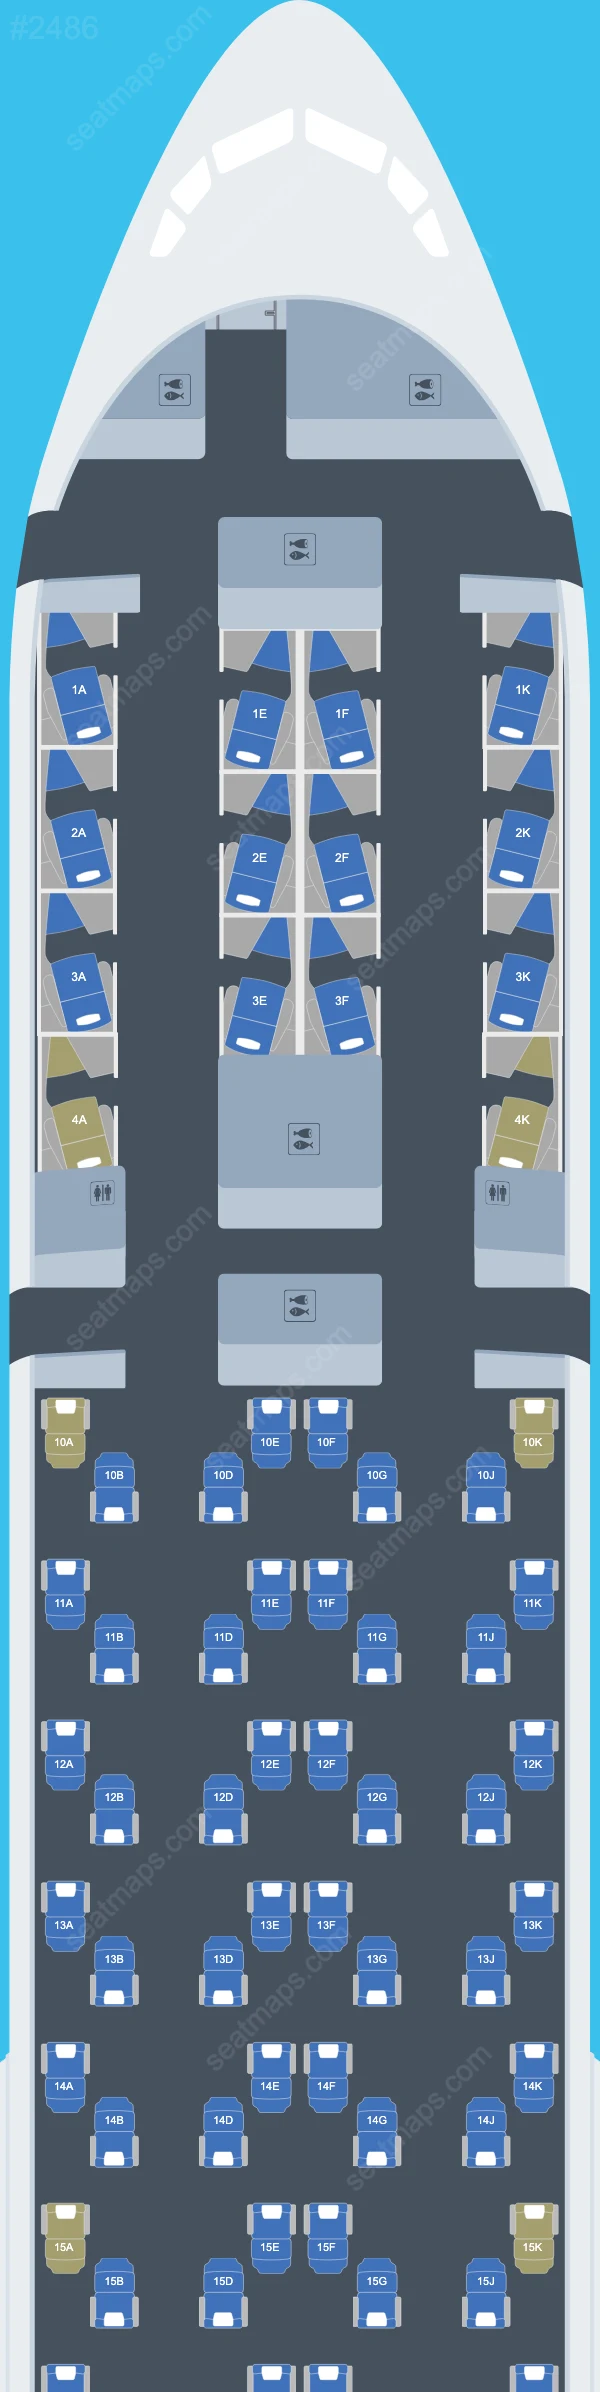 British Airways Boeing 777 Seat Maps 777-300 ER V.1